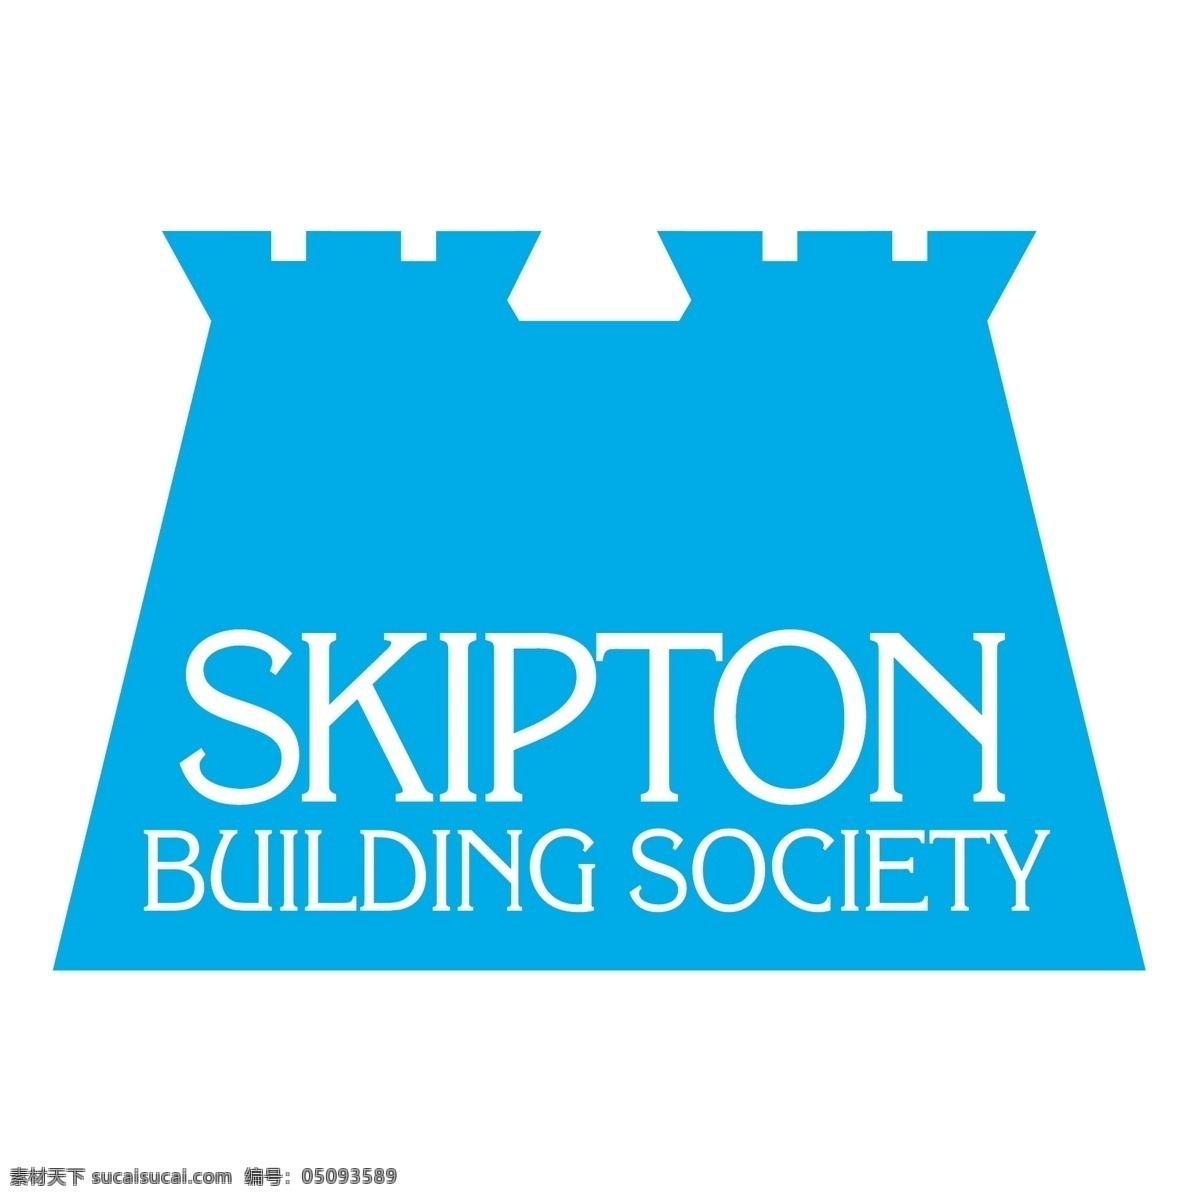 斯基 普顿 建筑 协会 建筑图 斯基普顿 斯基普顿建筑 社会建设 社会 建设 载体 不列颠的社会 图形 矢量 建立矢量图形 建筑家居